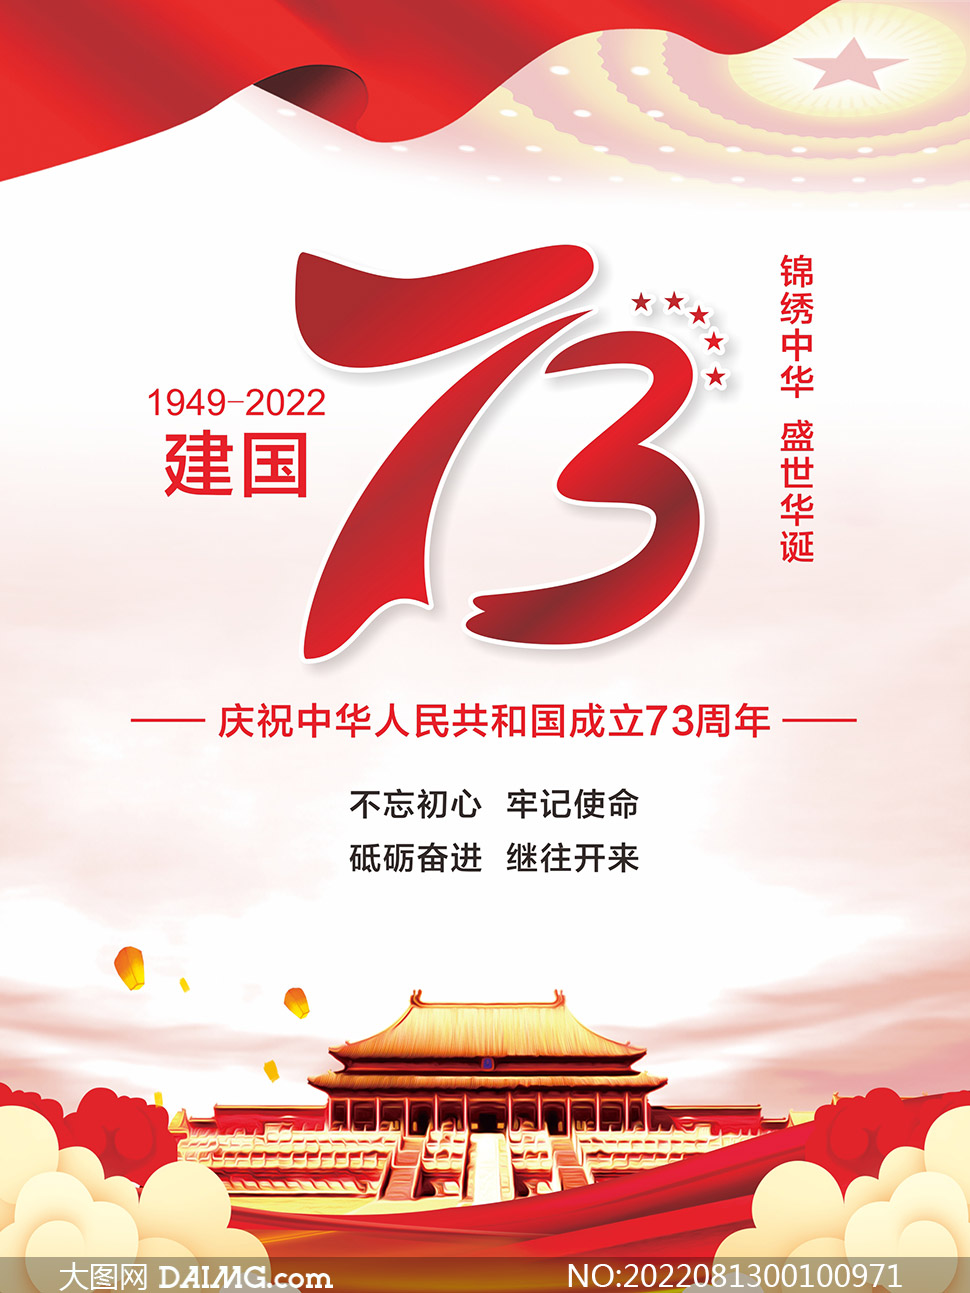 庆祝国庆节建国73周年海报设计矢量素材